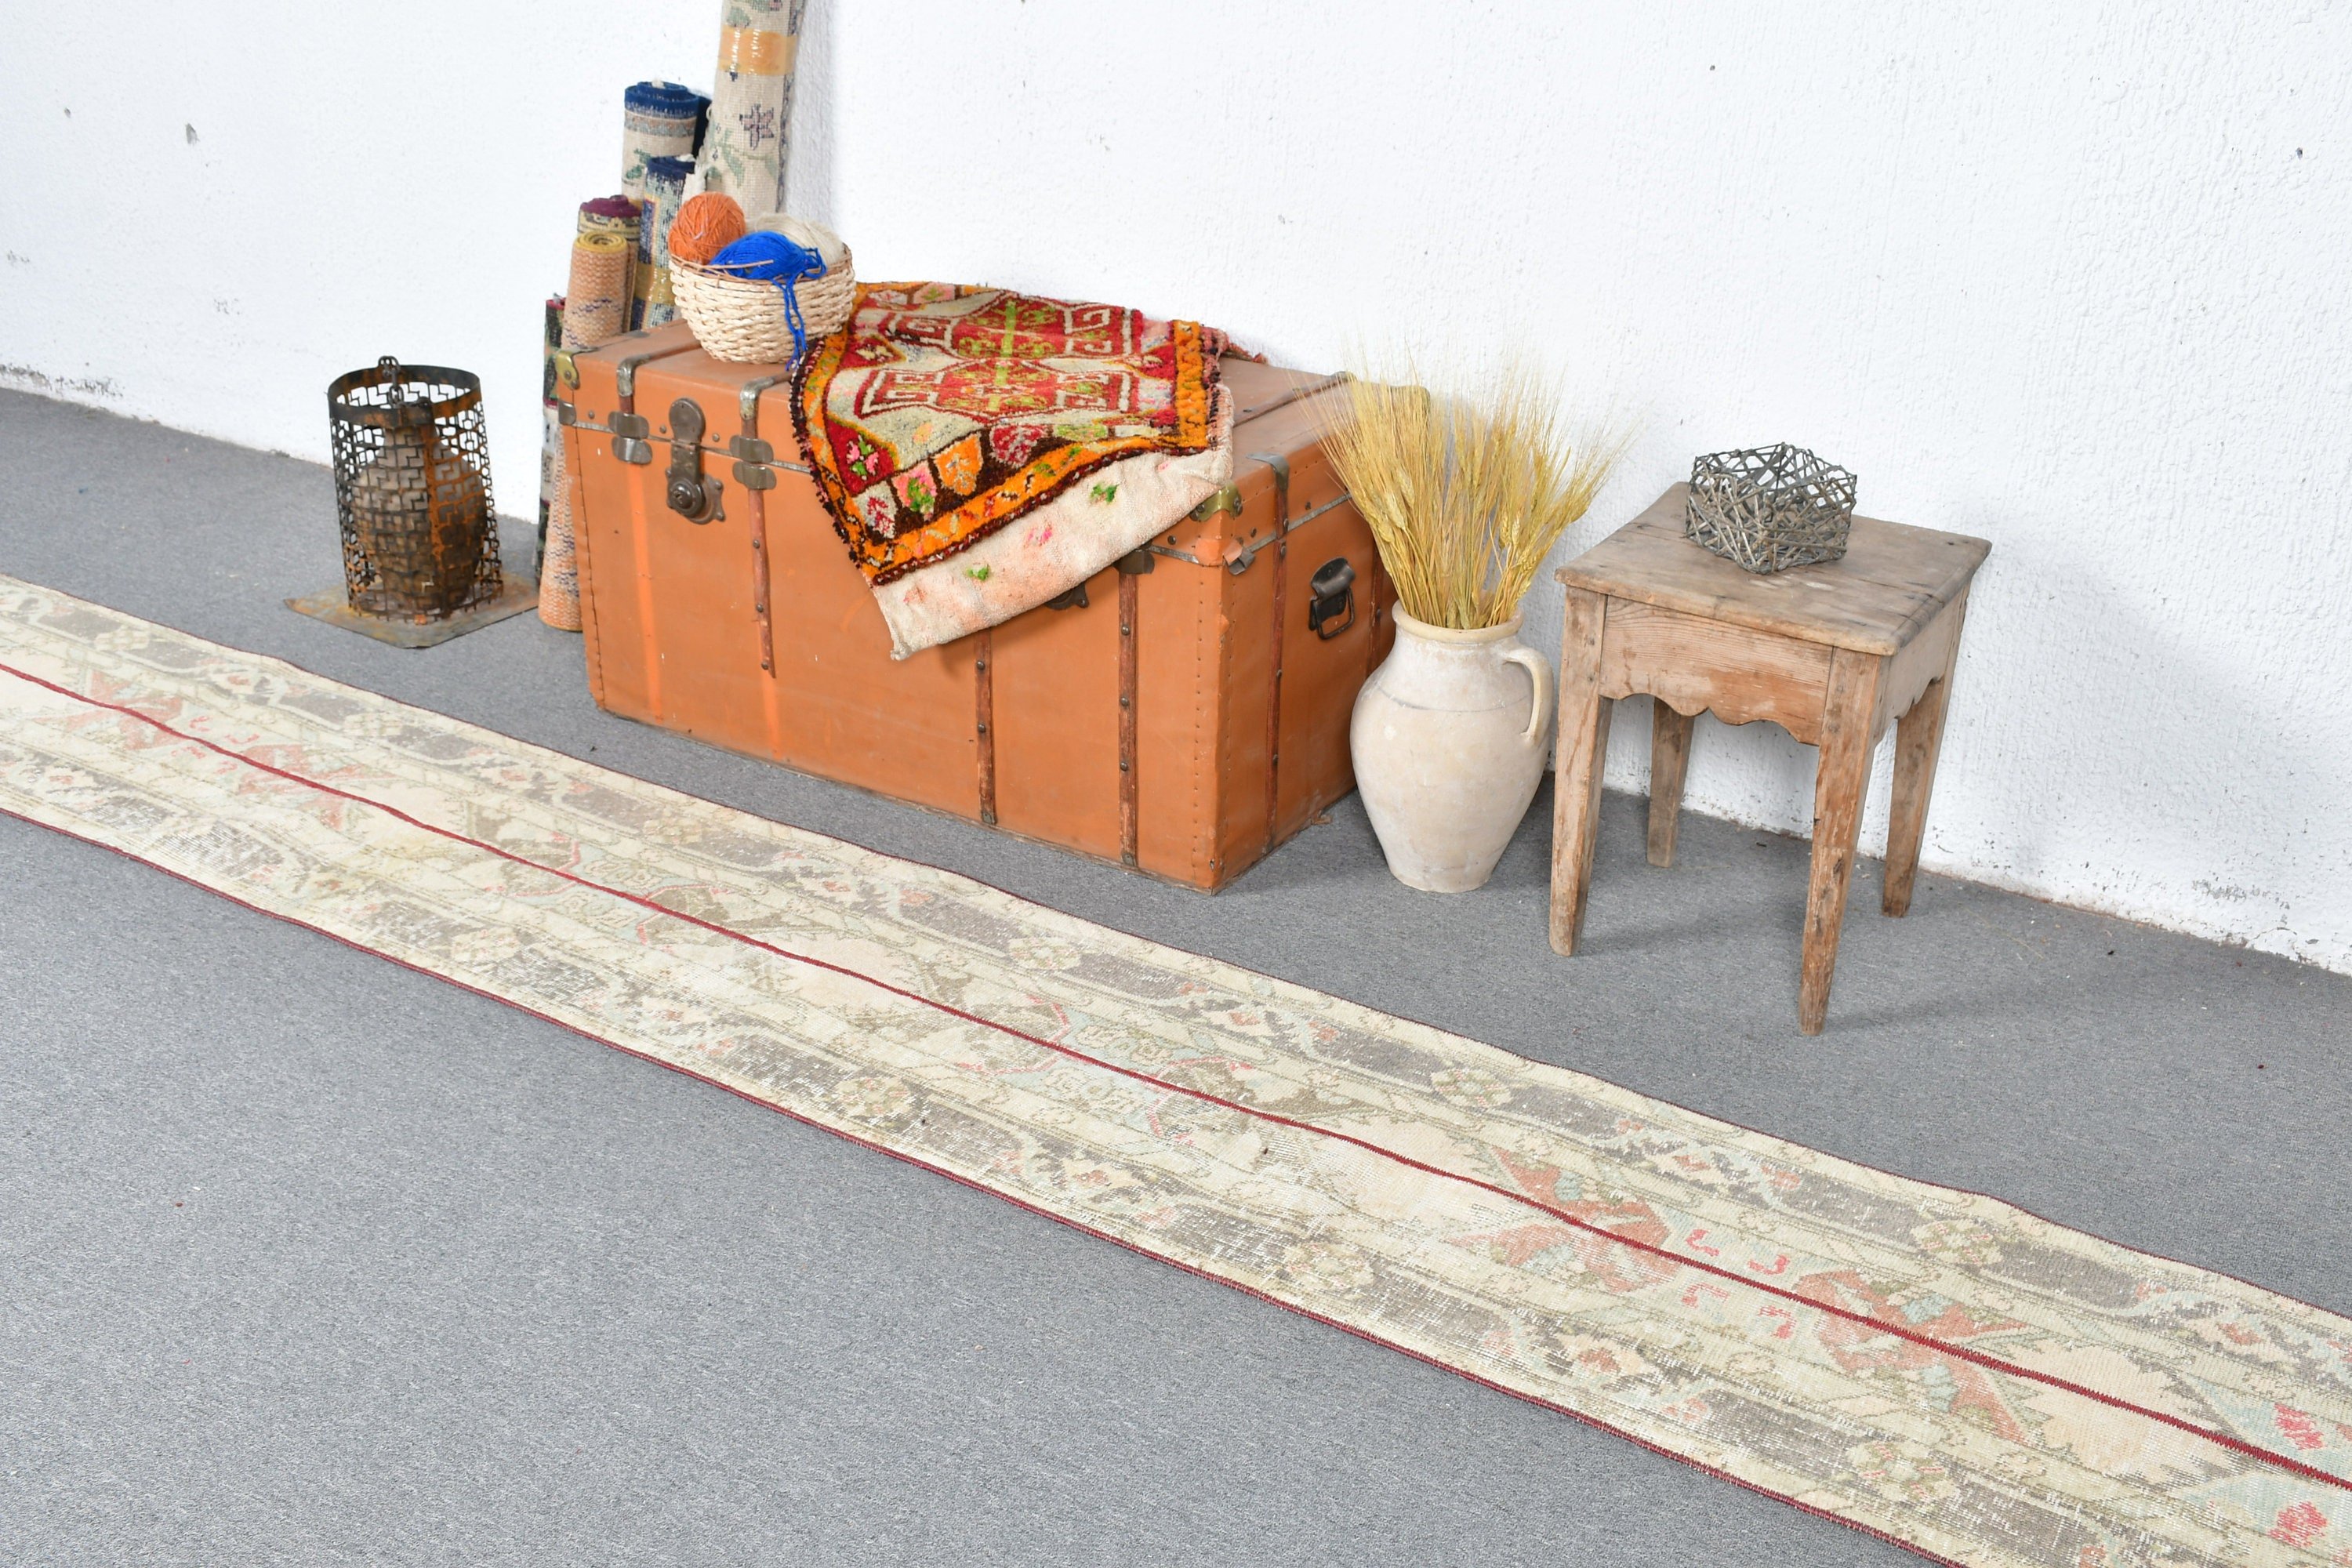 1.6x12.5 ft Runner Rug, Stair Rug, Vintage Rug, Turkish Rug, Antique Rugs, Pale Rug, Beige Moroccan Rug, Hallway Rug, Oriental Rug, Art Rug